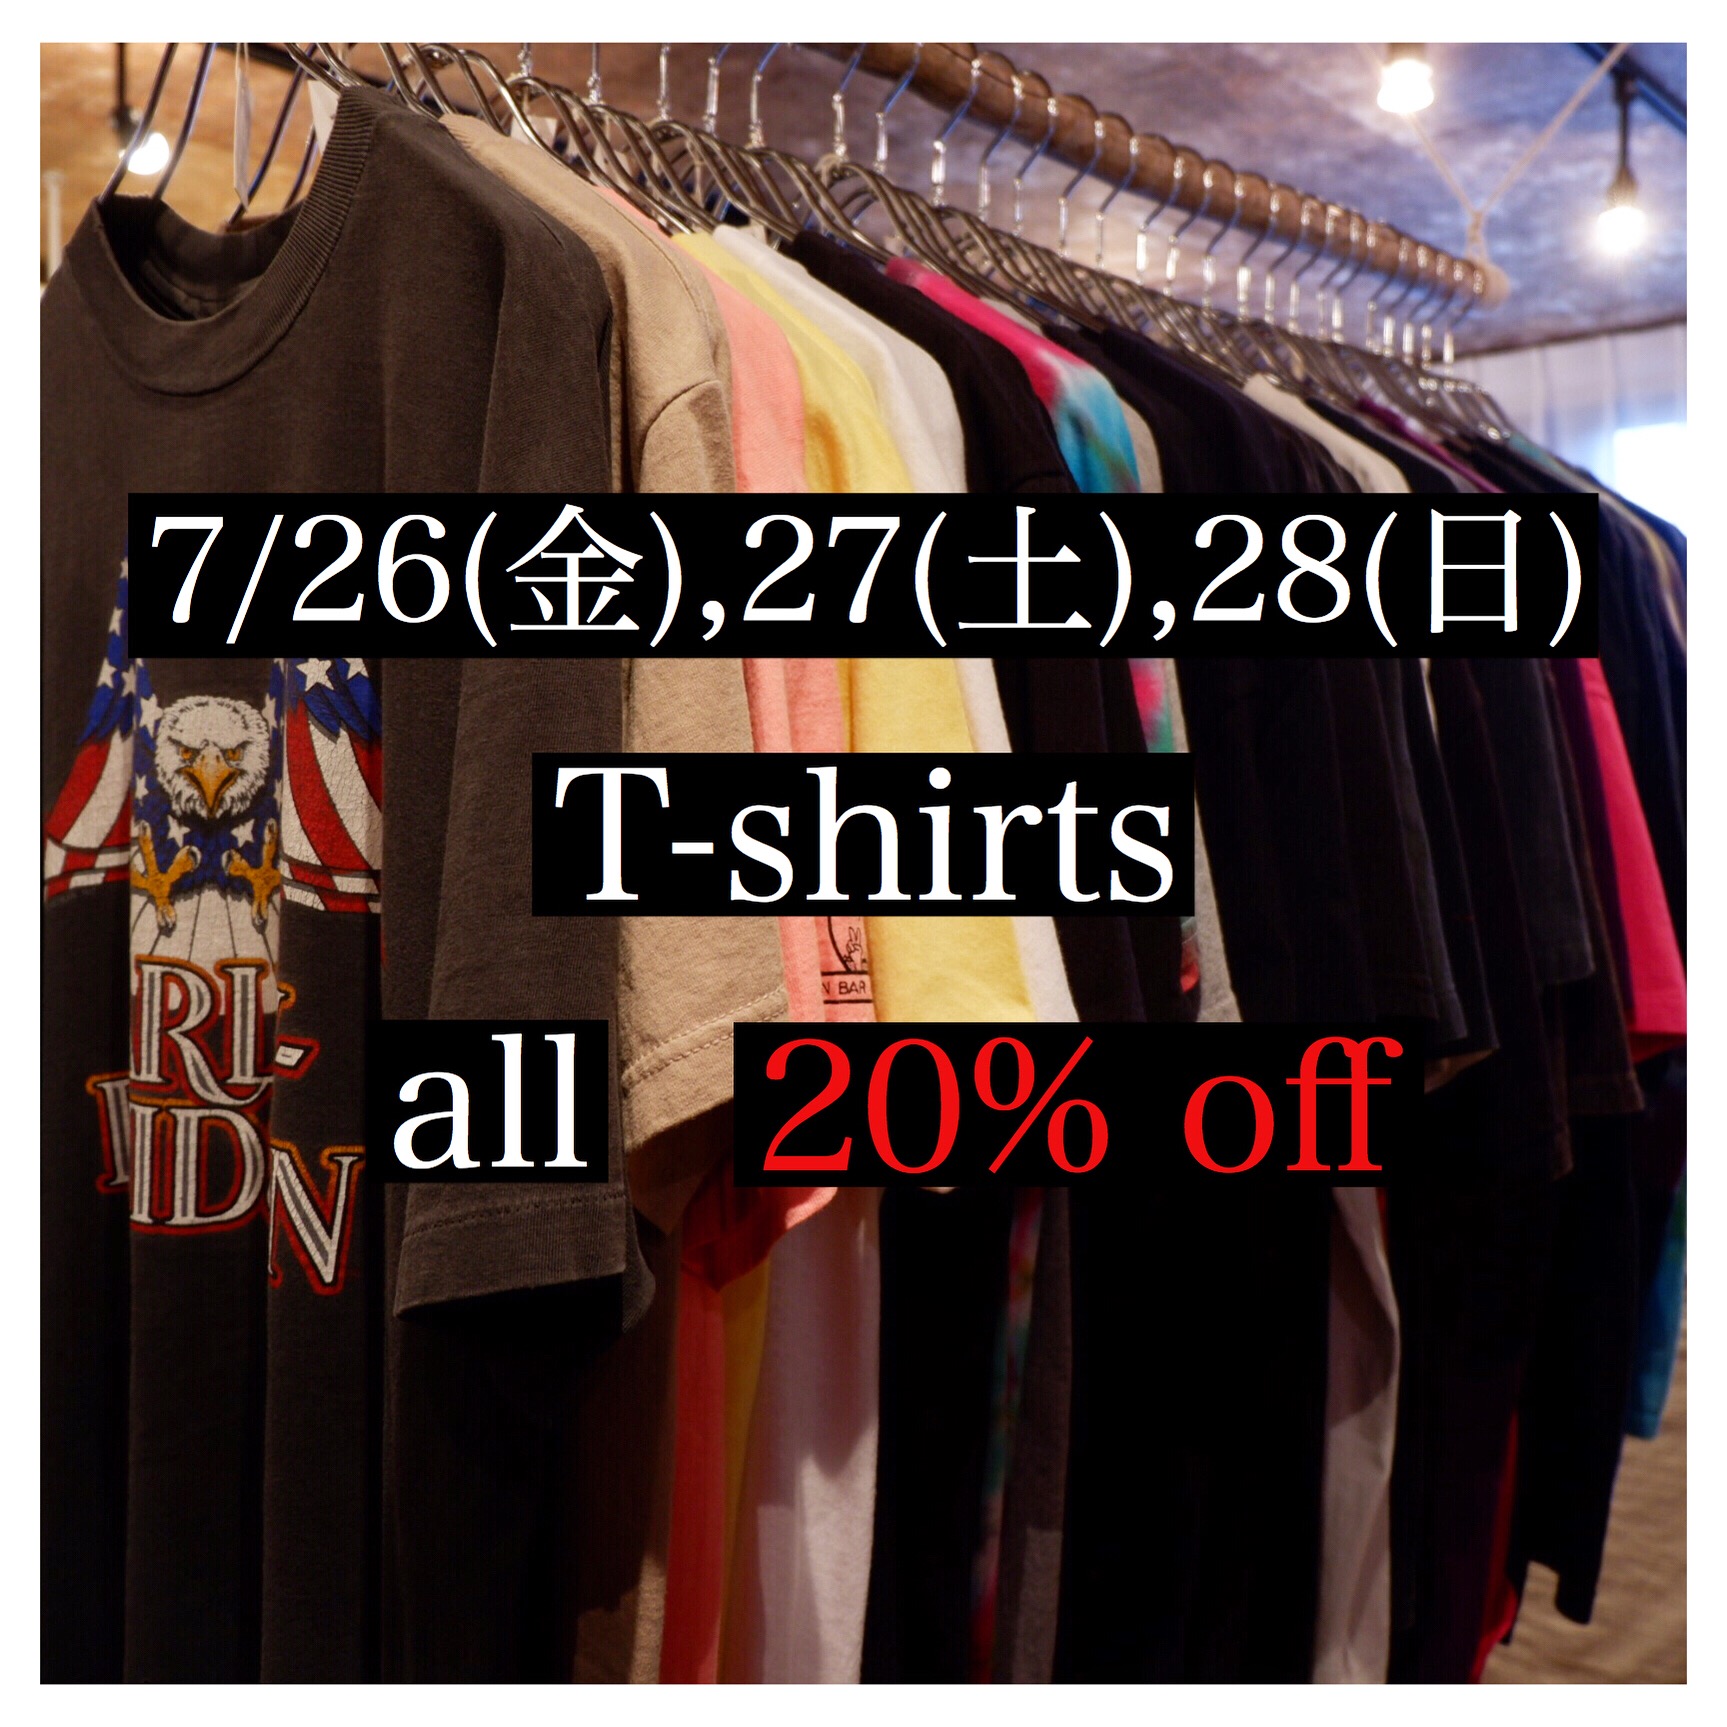 7/26(金),27(土),28(日) T-shirts all 20%off !!